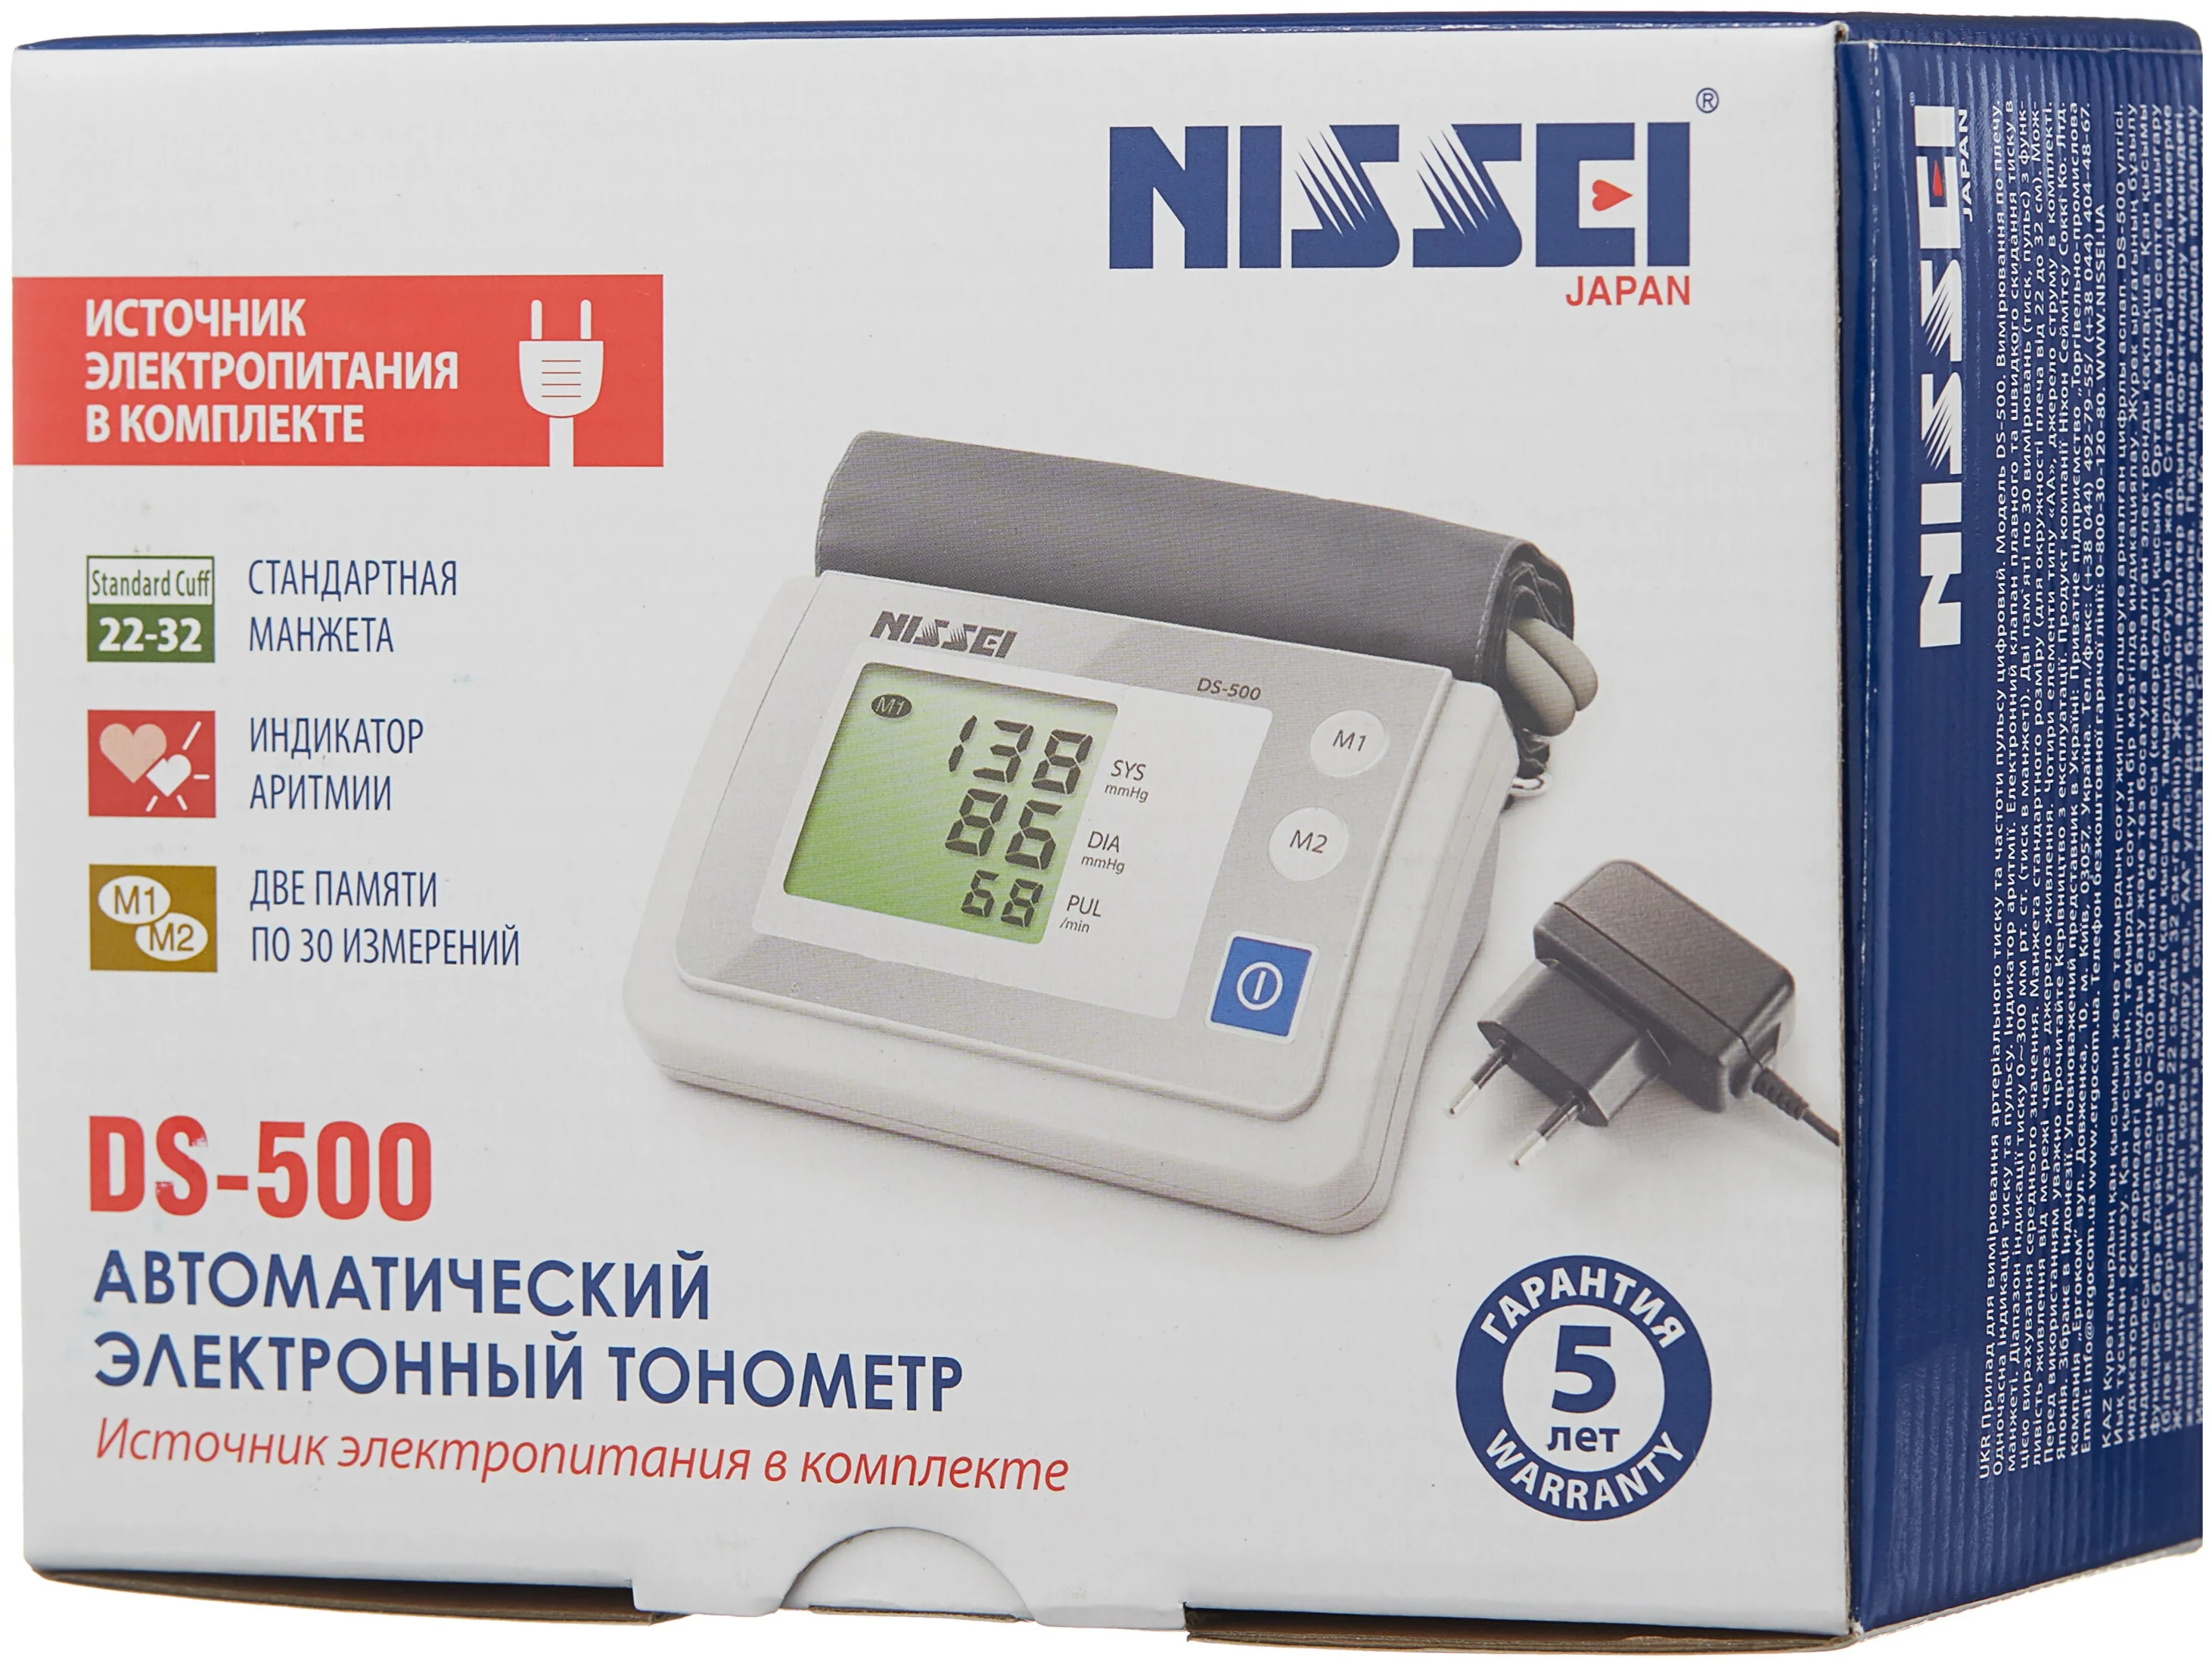 Nissei DS-500 - функции: измерение пульса, режим нескольких измерений, индикатор аритмии